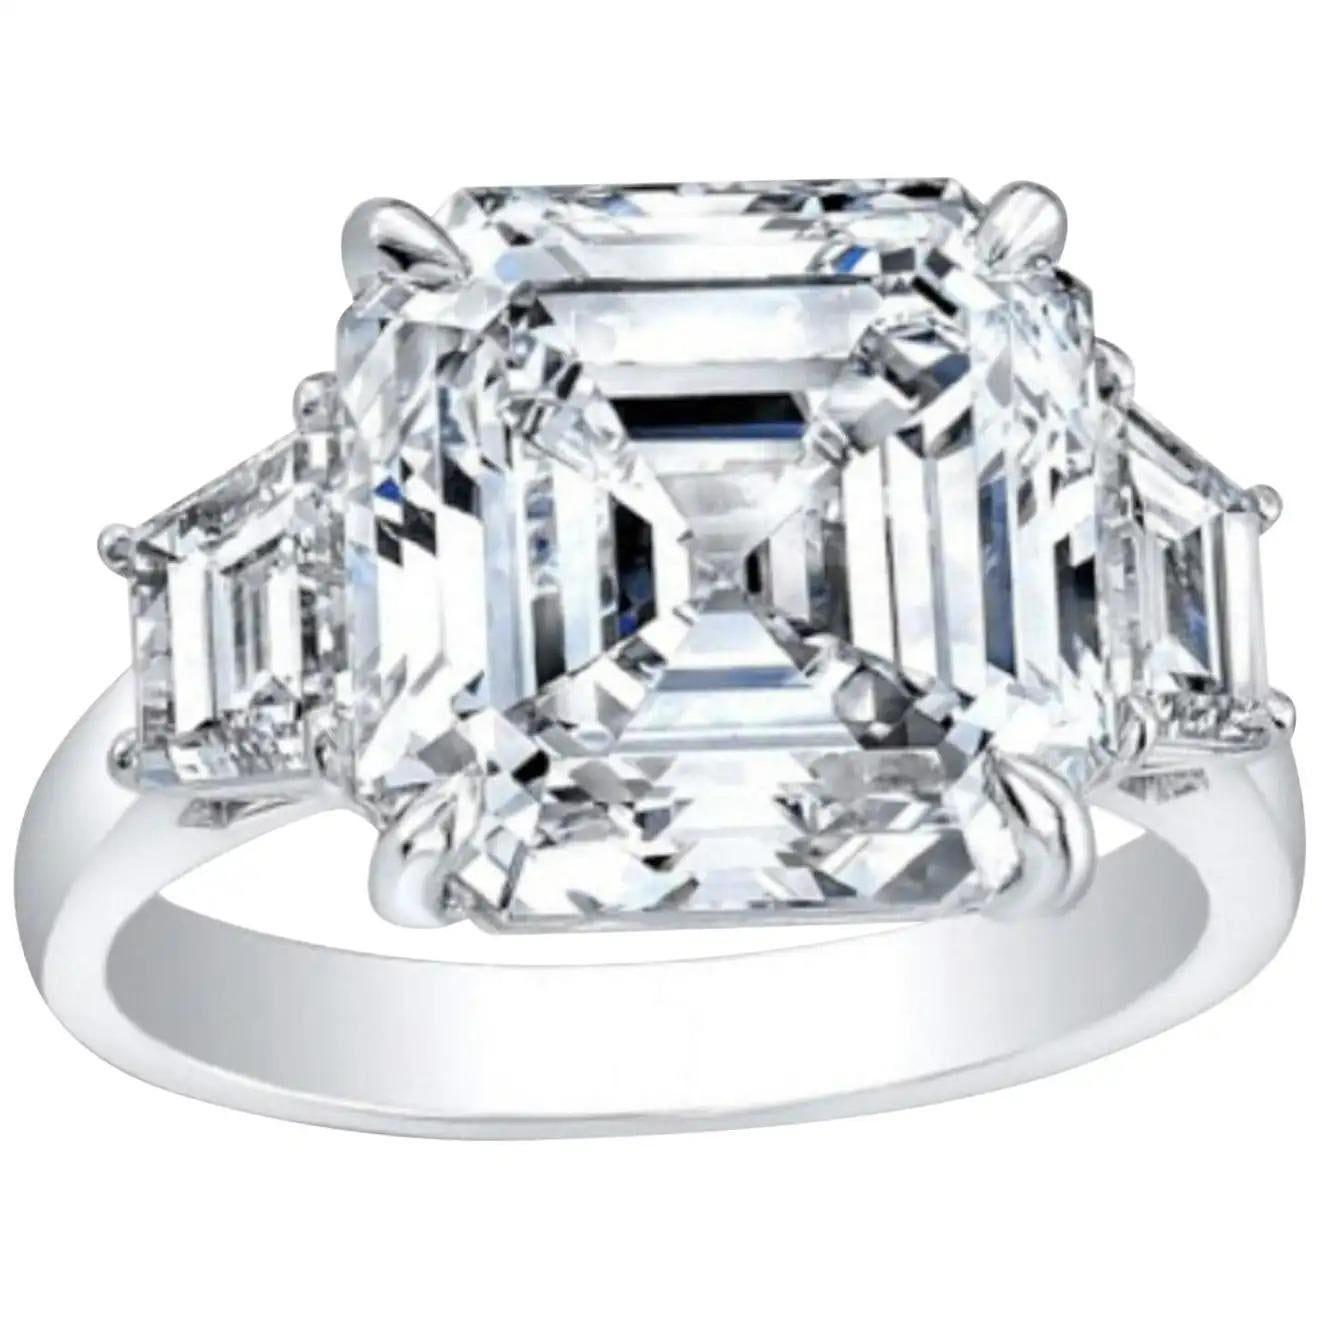 Élevez votre histoire d'amour avec l'élégance intemporelle de cette bague de fiançailles en diamant Asscher certifié GIA de 4,01 carats, ornée de deux diamants de taille trapézoïdale de chaque côté, le tout serti dans de l'or 18 carats. La pièce